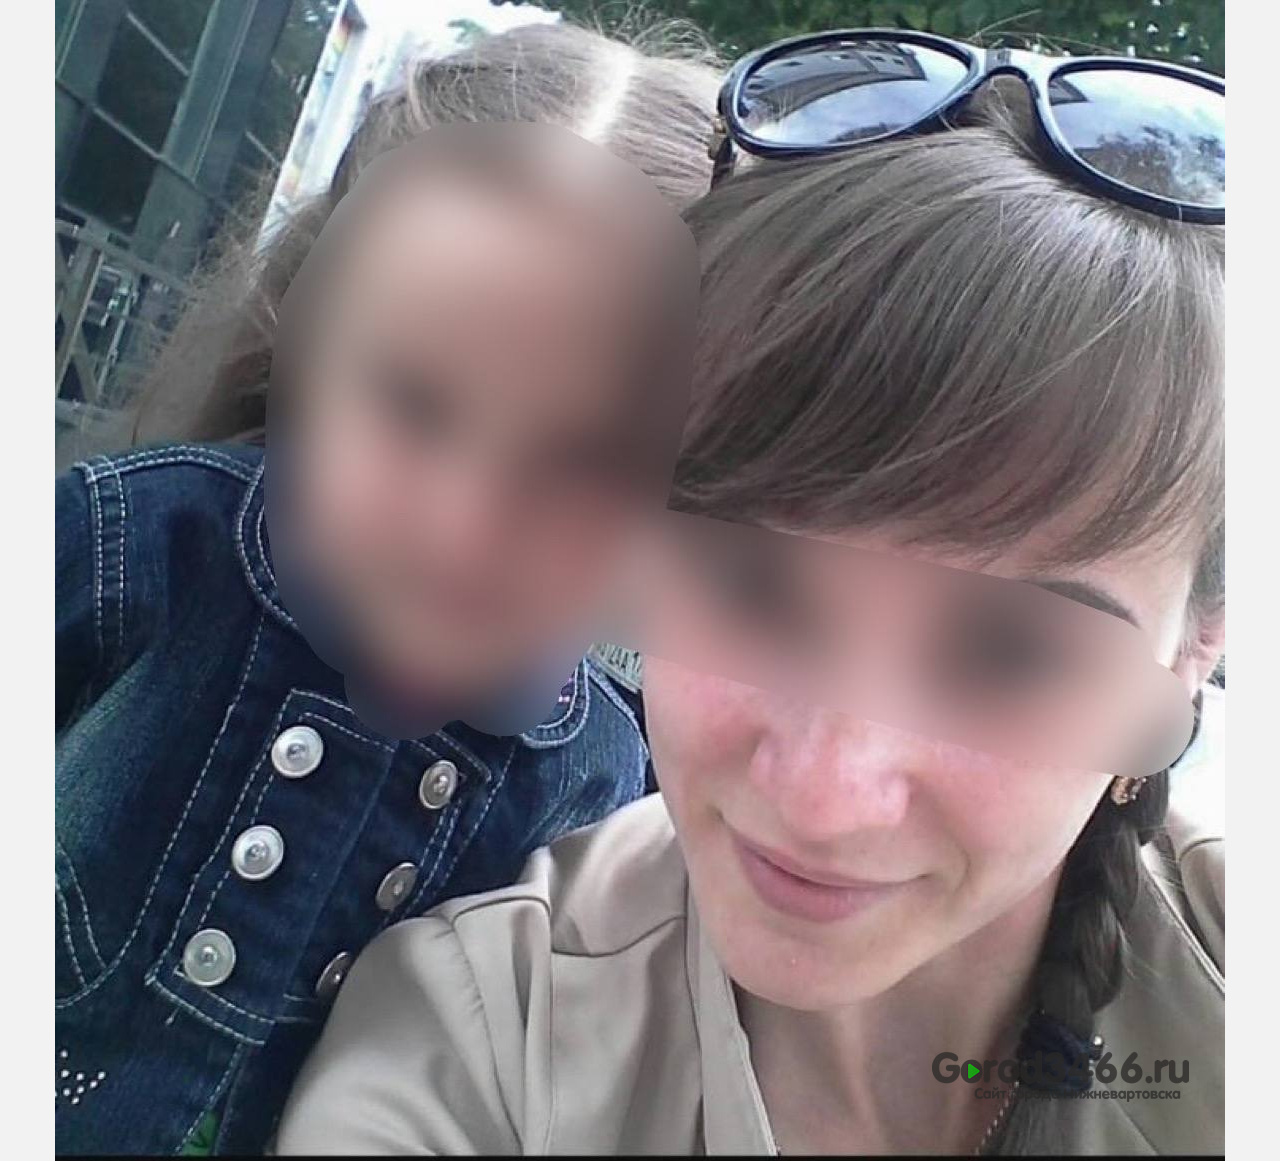 Жительница Югры оставила свою двухлетнюю дочь в Краснодаре и сбежала